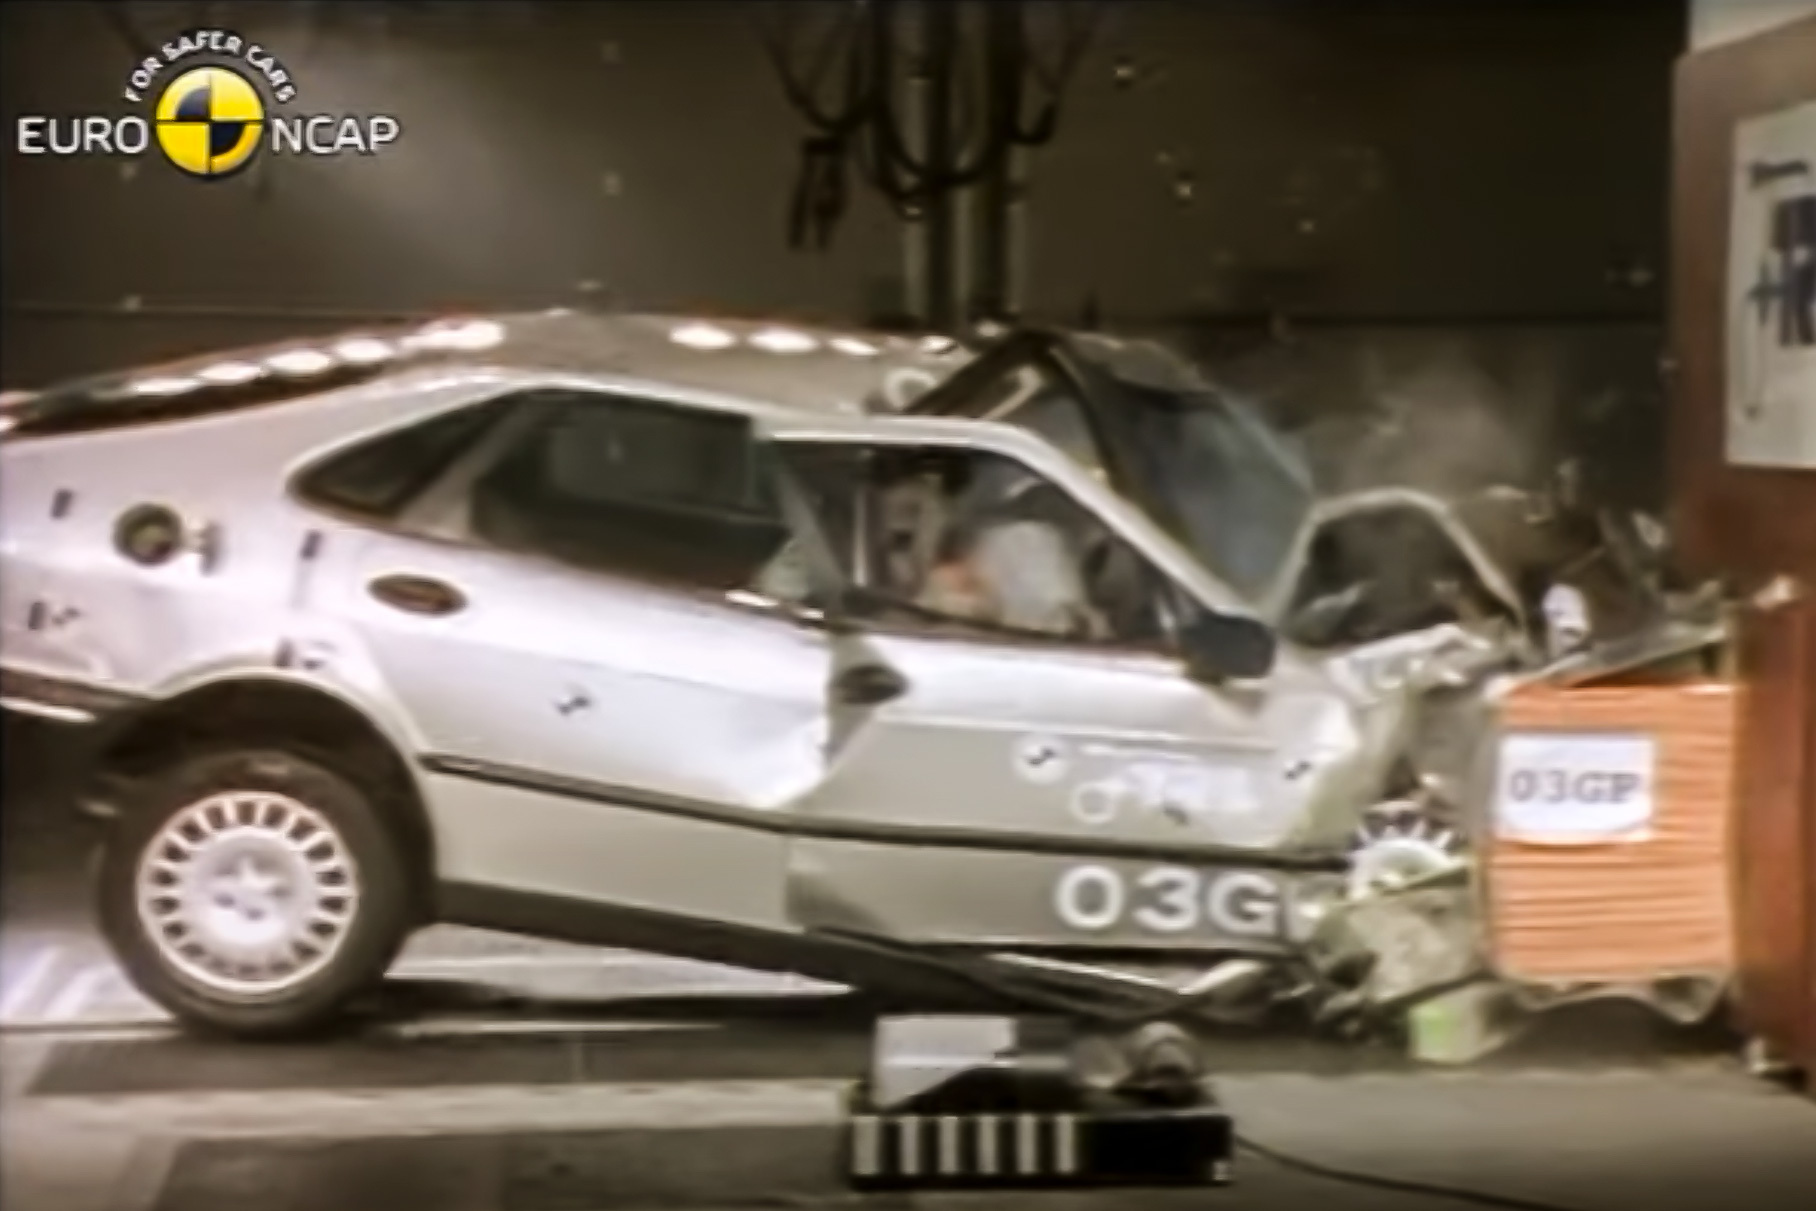 Кадр из [видео](https://youtu.be/X39irHLwFnw) удара в ходе испытаний Euro NCAP